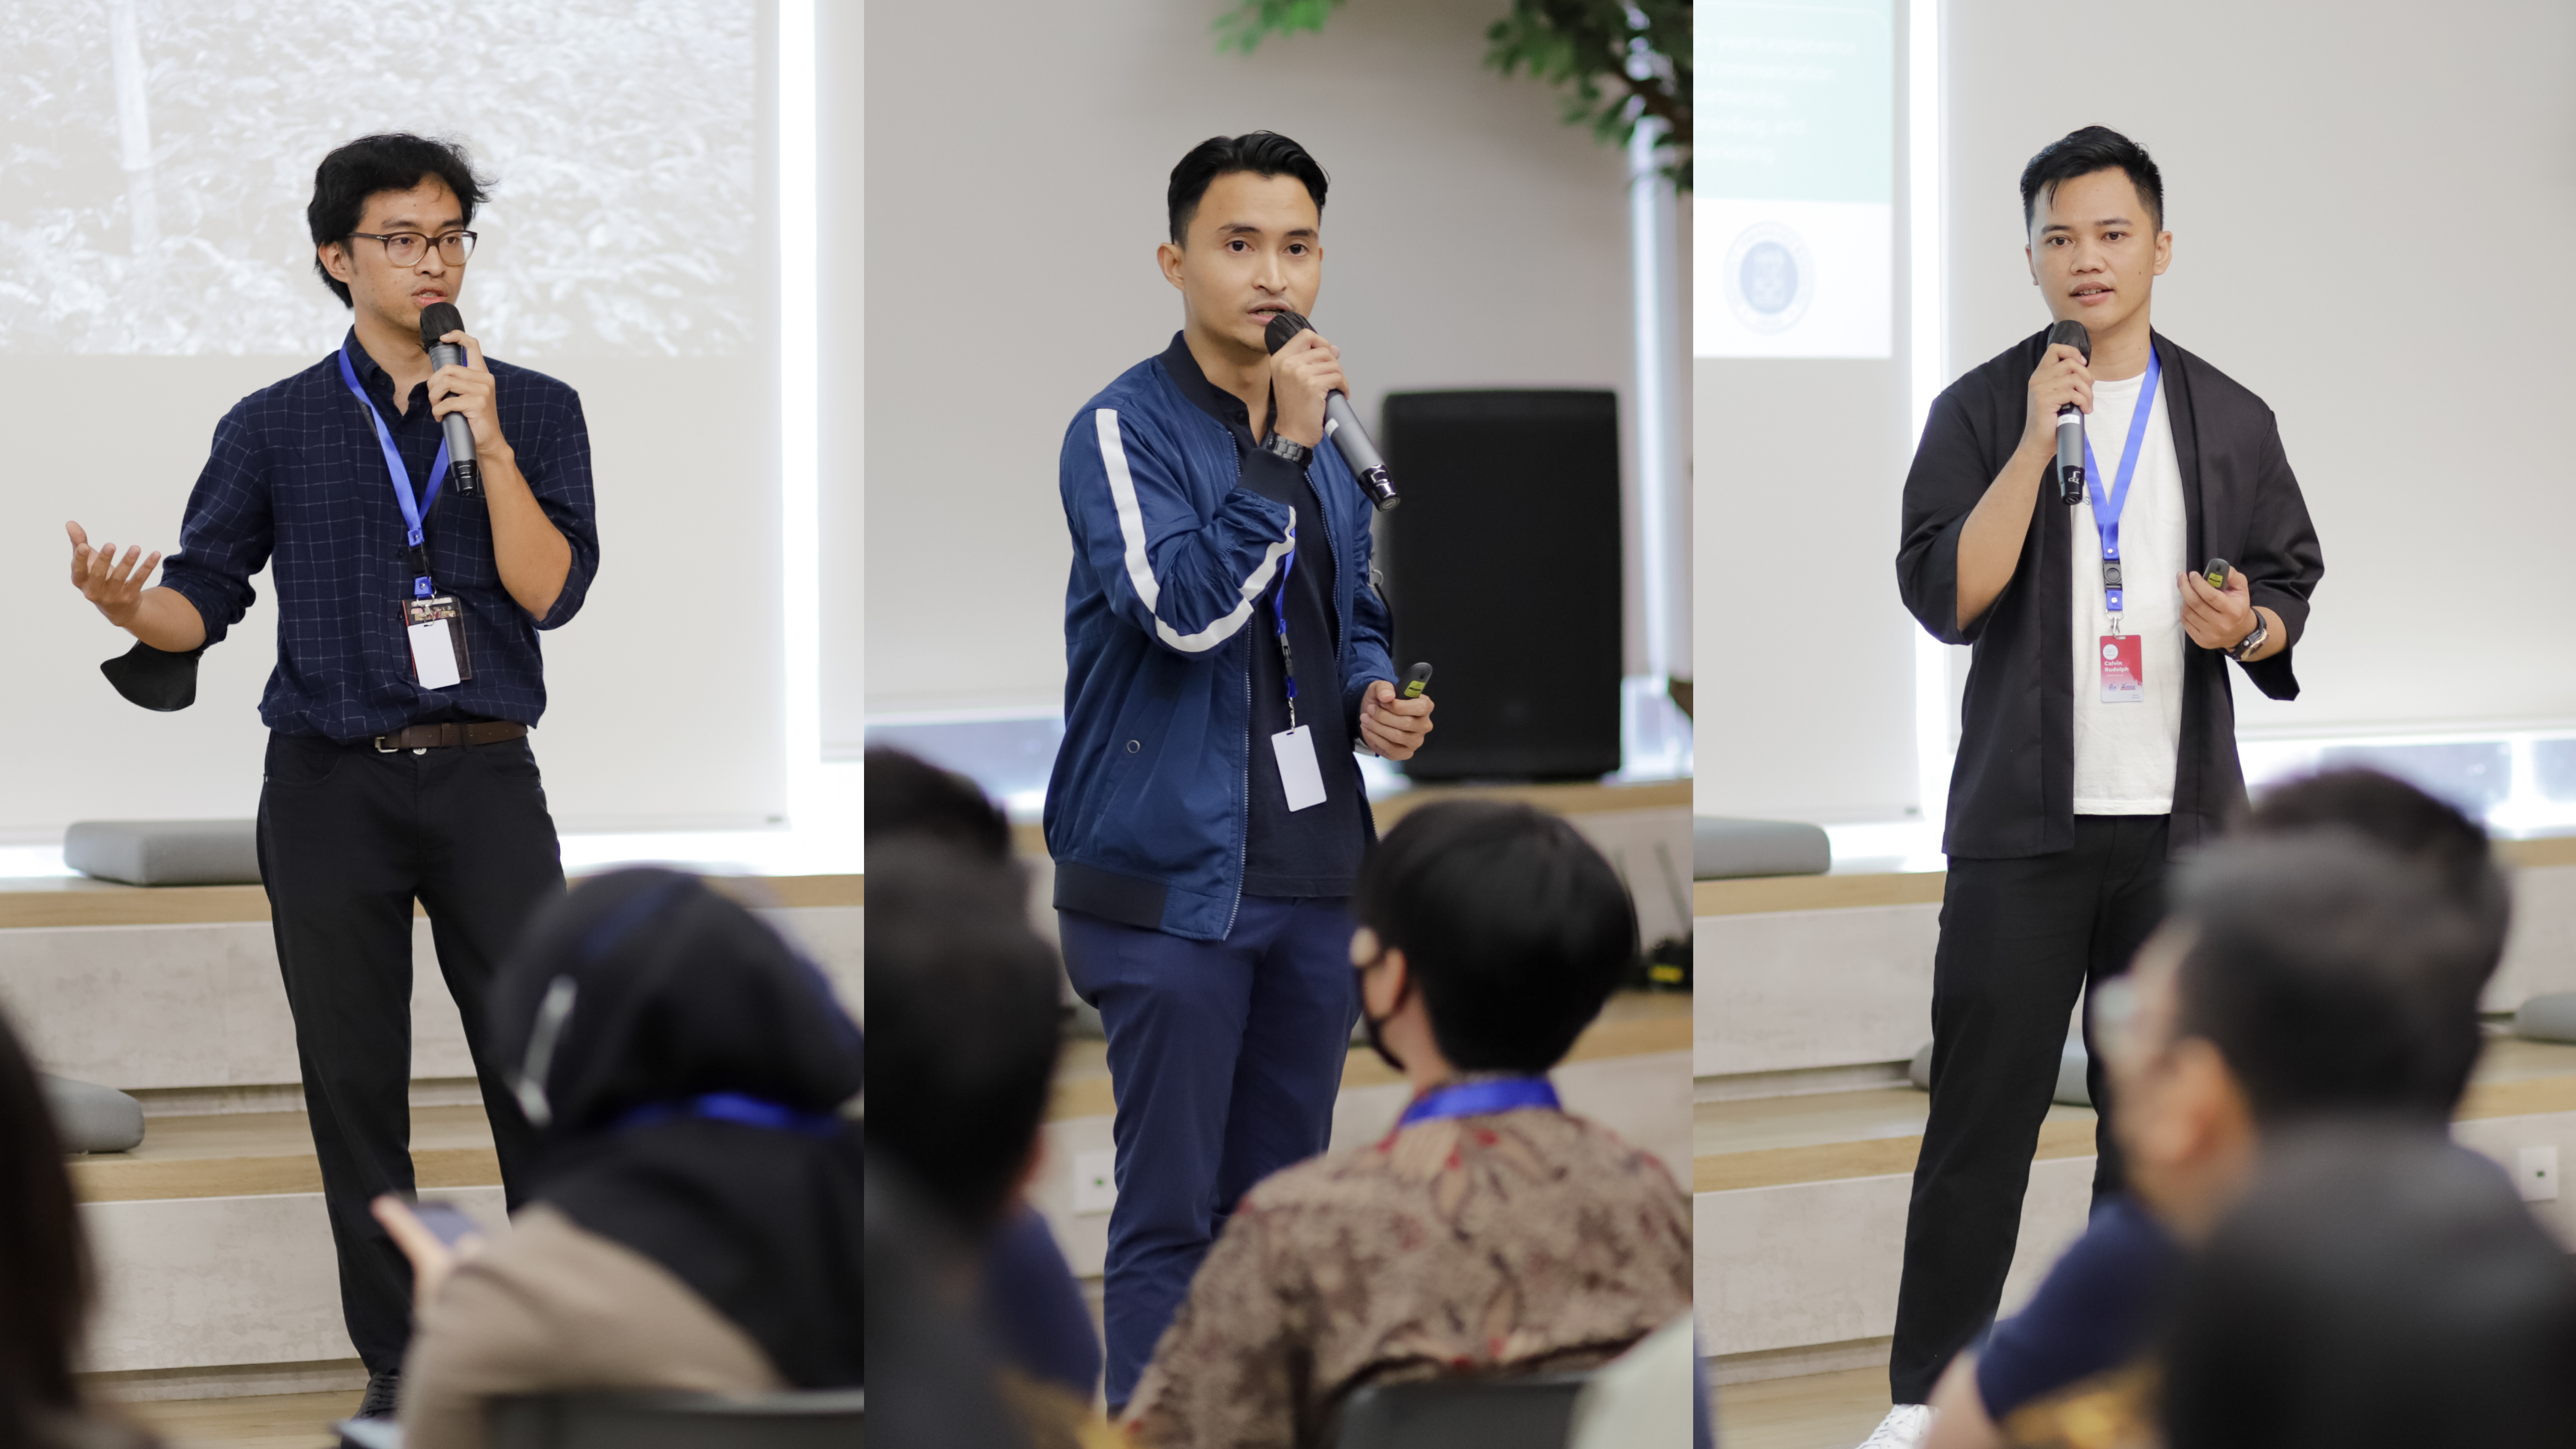 Dari kiri ke kanan, Arka Irfani, CEO Bell Society, Agung Bimo, CEO CarbonEthics, dan Calvin Rudolph, COO Surplus Indonesia, menjelaskan bisnis mereka selama sesi presentasi, kemudian dilanjutkan dengan sesi tanya jawab.